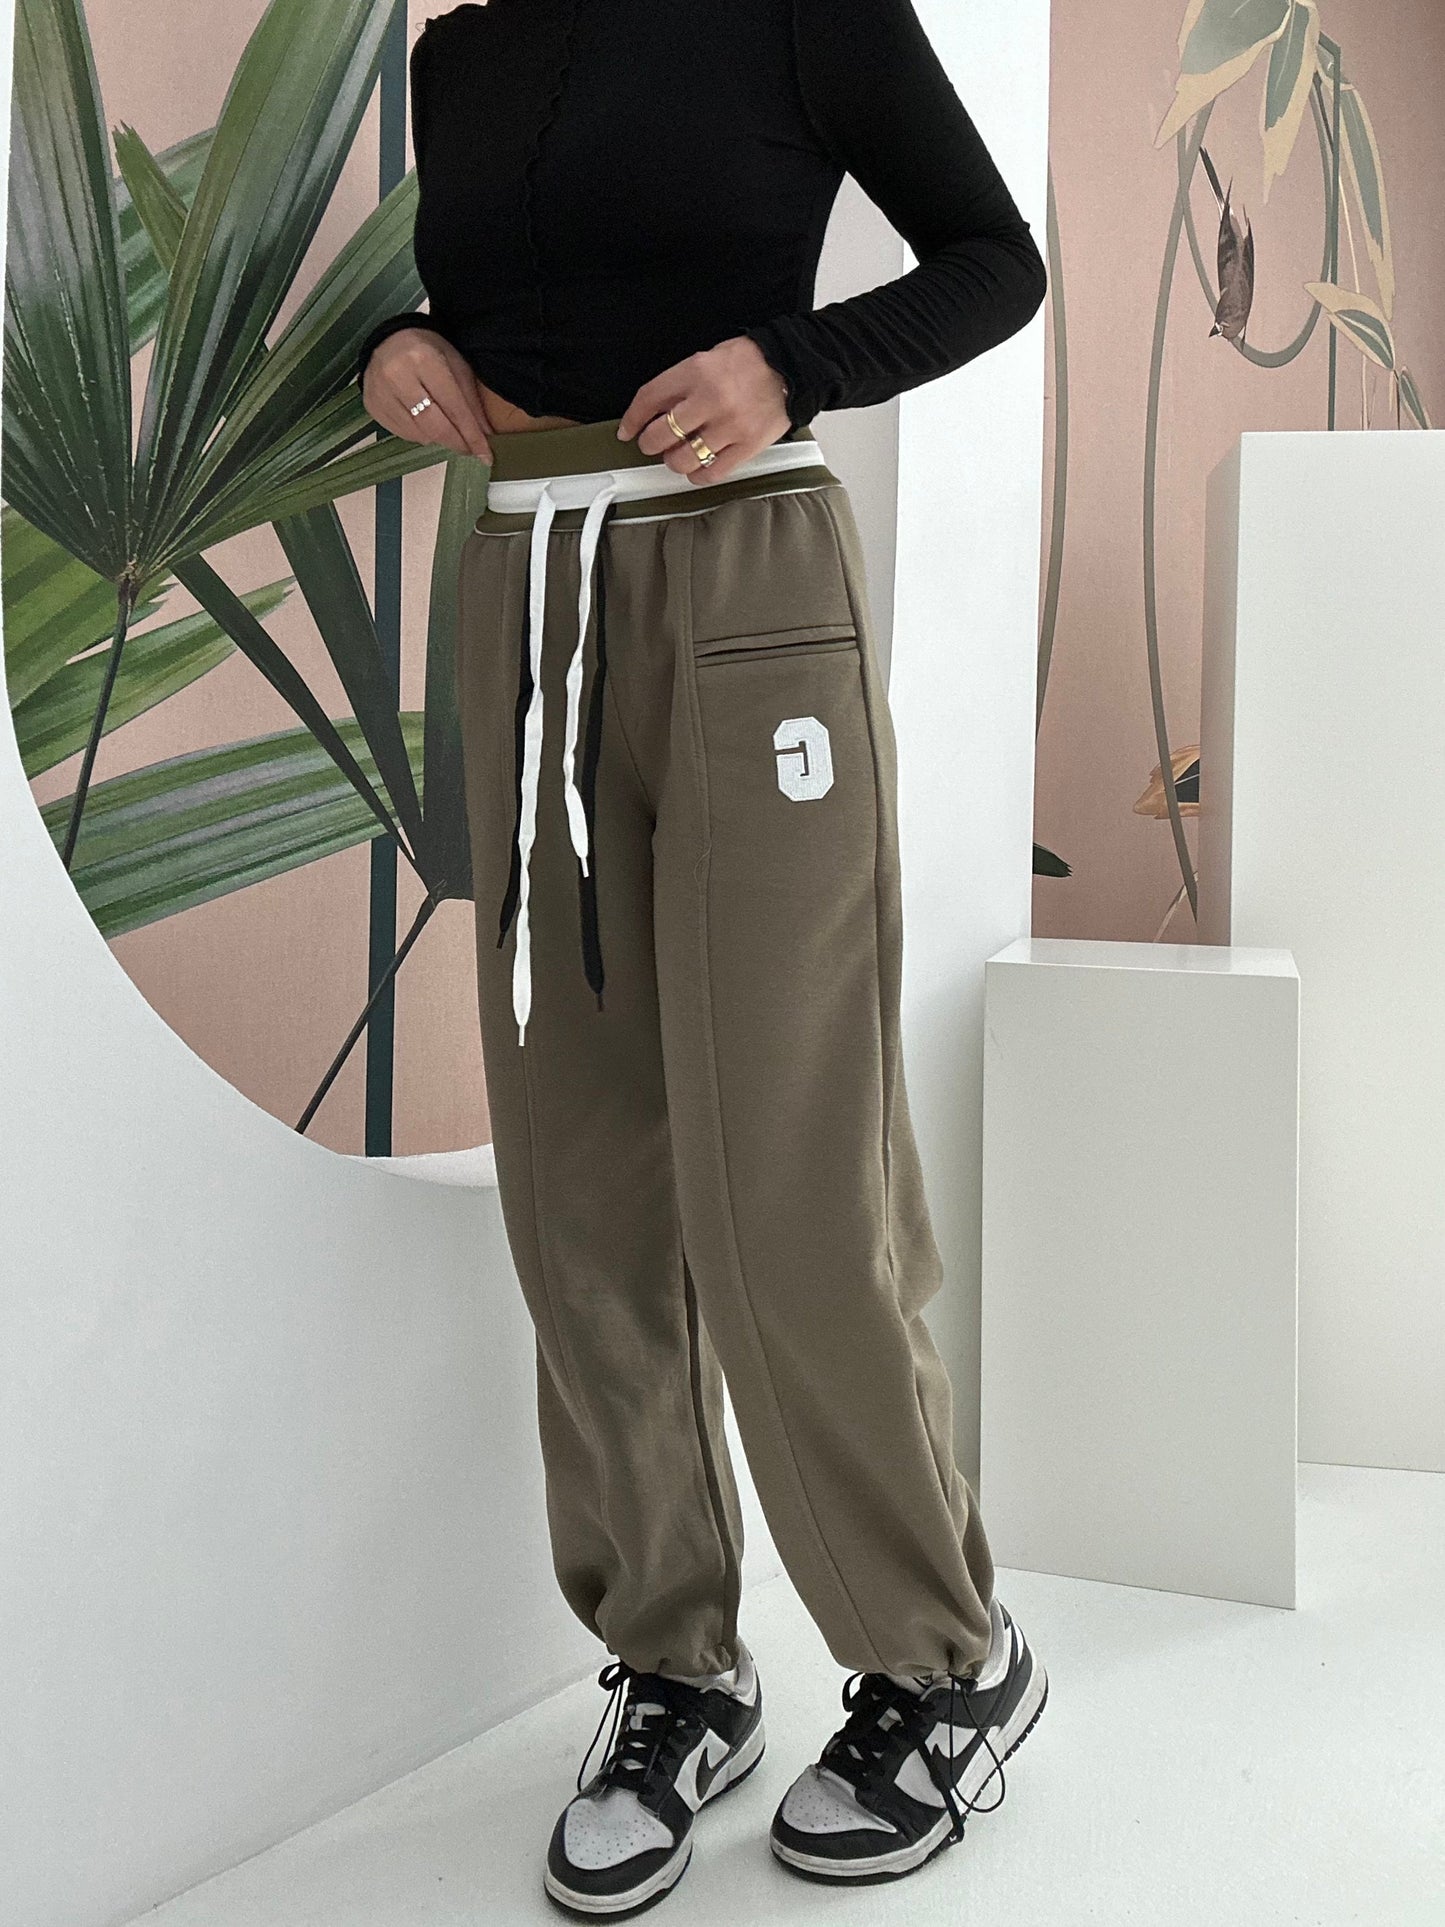 Pantalone tuta ‘G’ con banda Verde militare